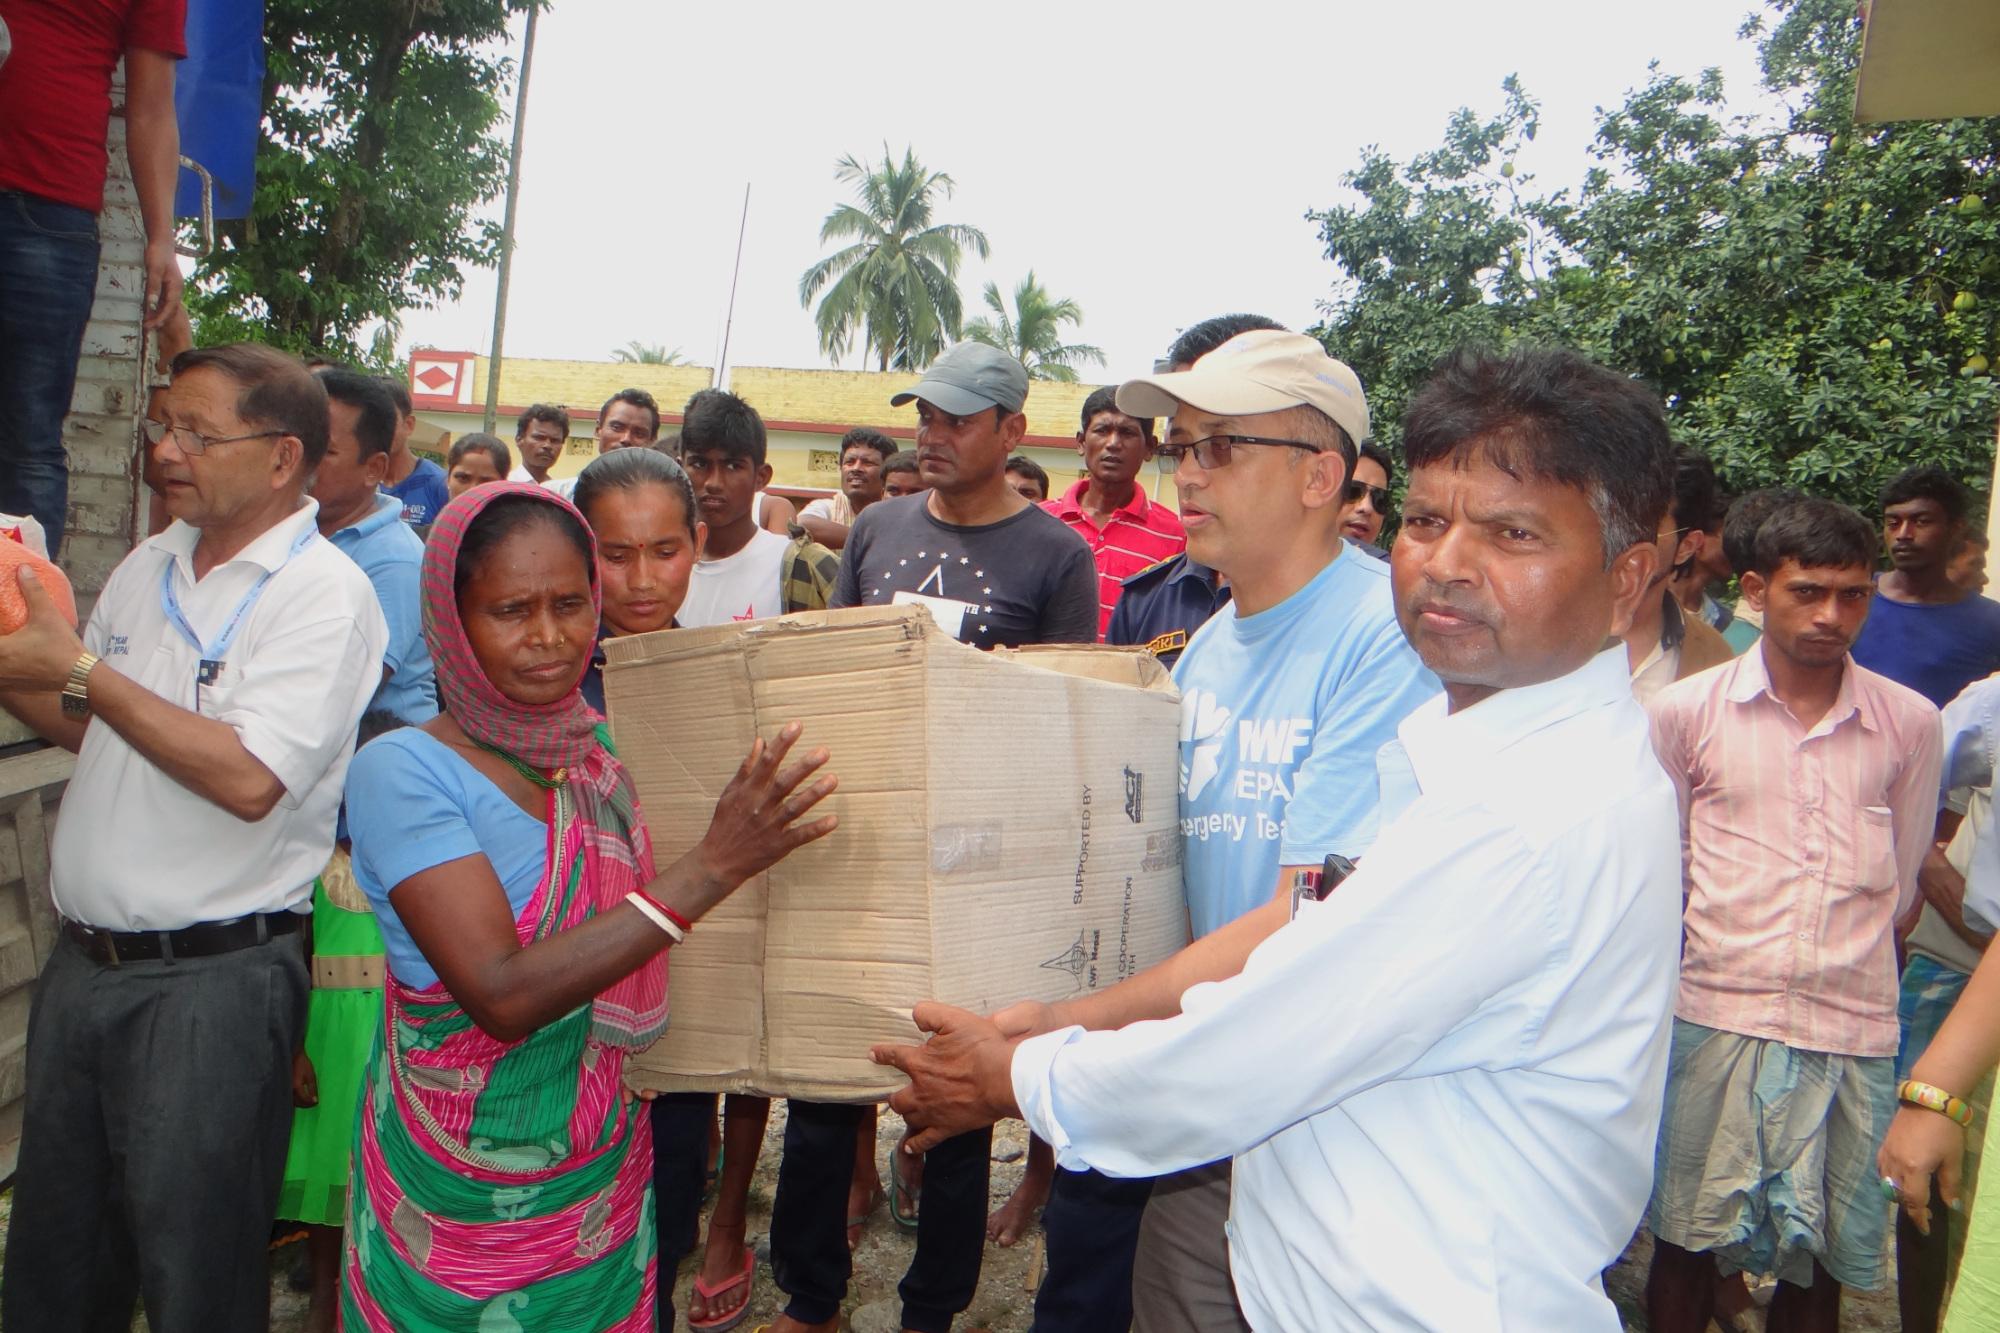 Eine von der Flut betroffenen Familie in Jhapal Rural Municipality erhält ein Hilfspaket mit Lebensmitteln, Decken und Küchenutensilien vom LWB Nepal und seiner Partnerorganisation in Jhapa. Foto: LWB/Prabesh Bhandari